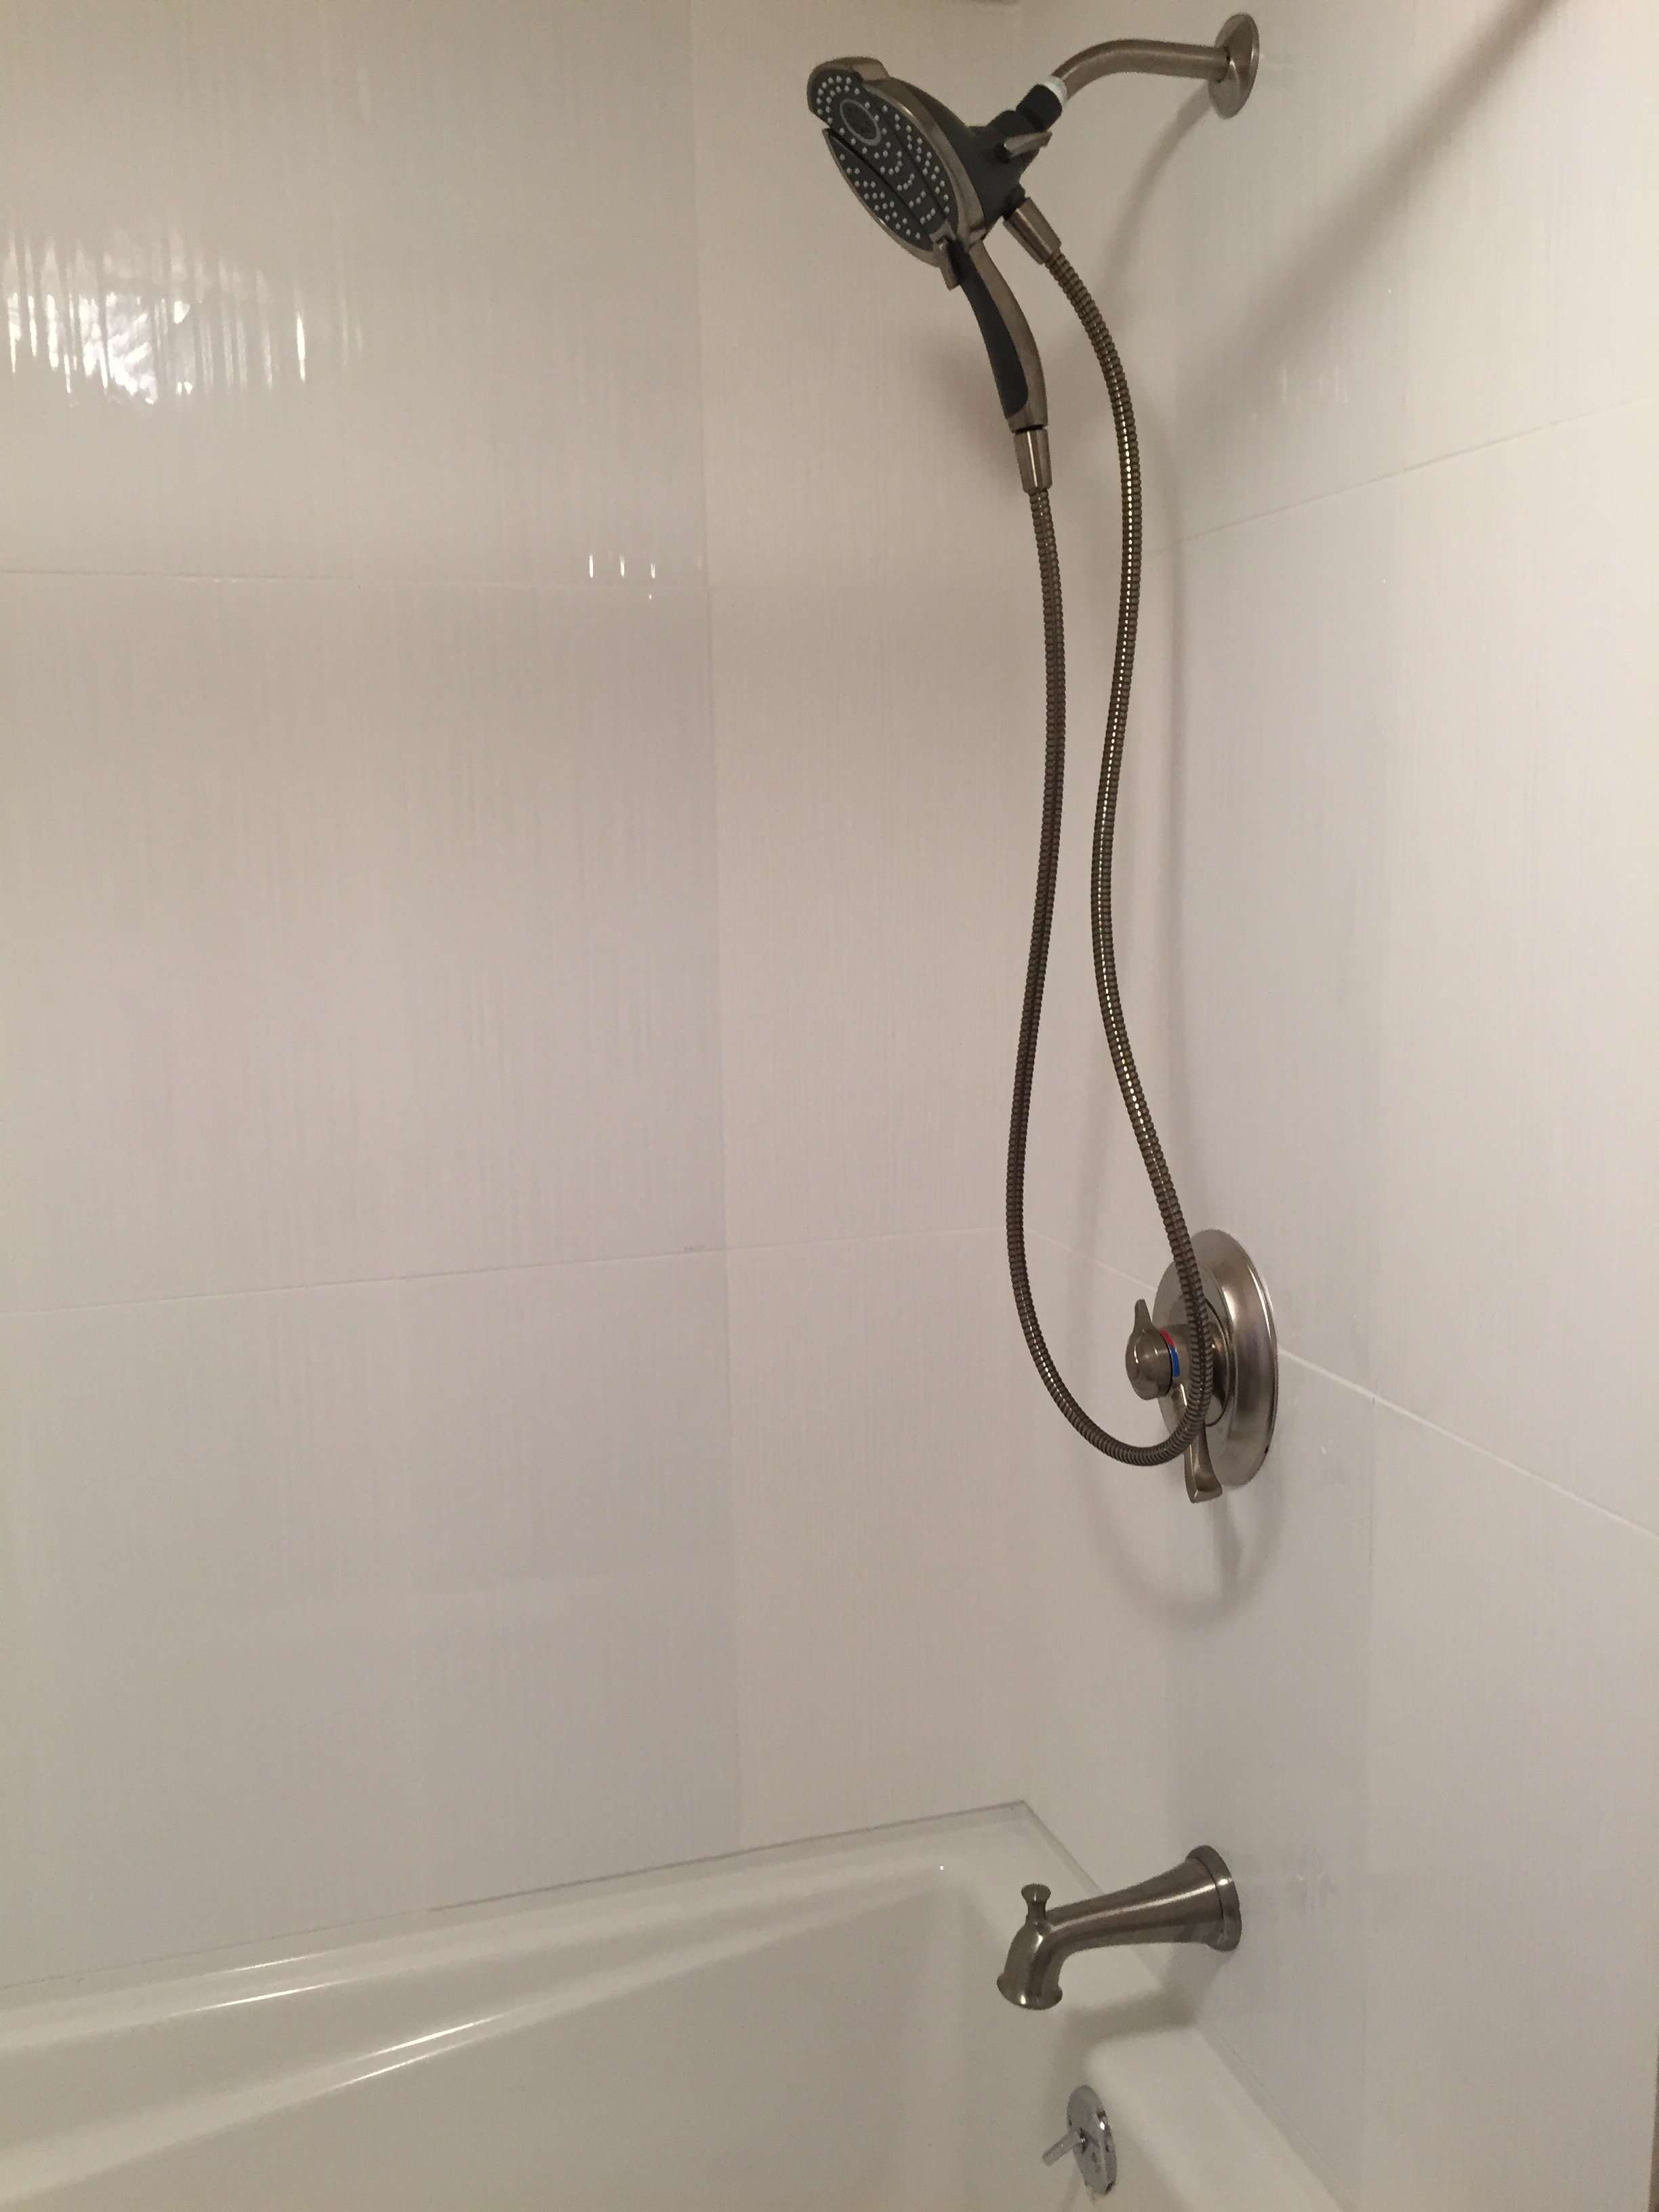 A Tiled Shower